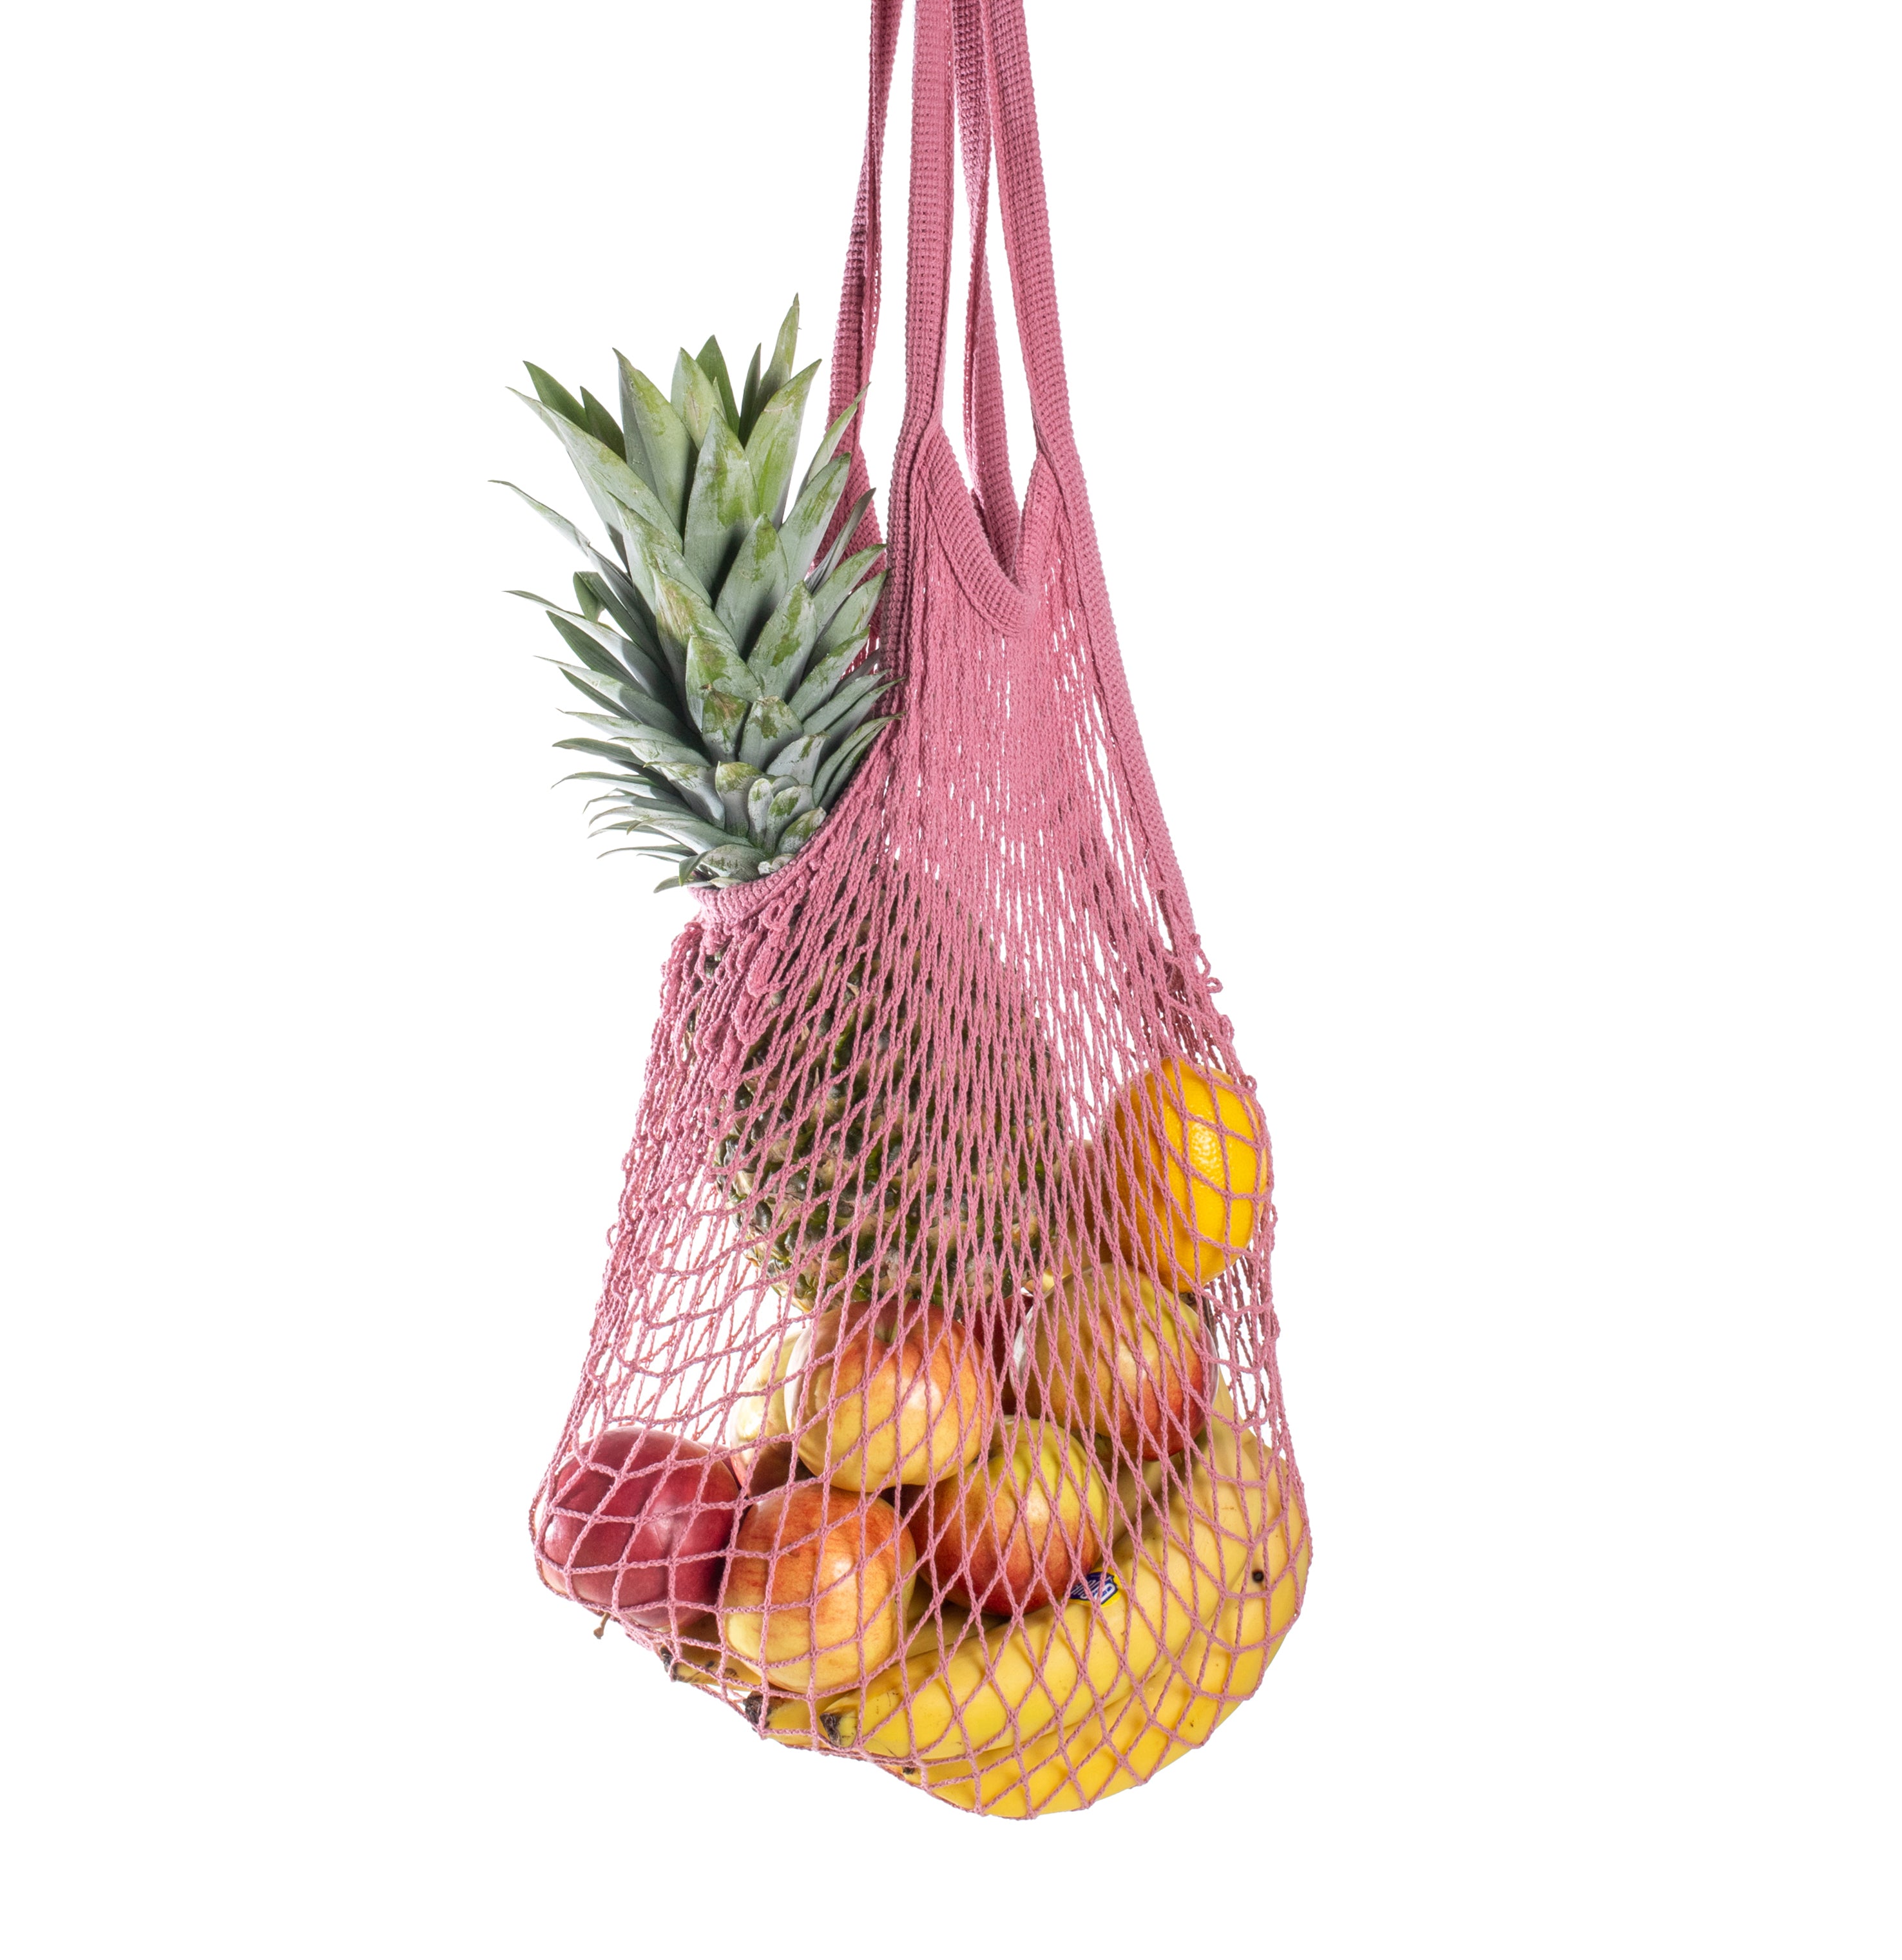 Rezginė sietka pirkinių krepšys rausvos spalvos, su vaisiais viduje, dovanų idėjos, mados aksesuarai moterims